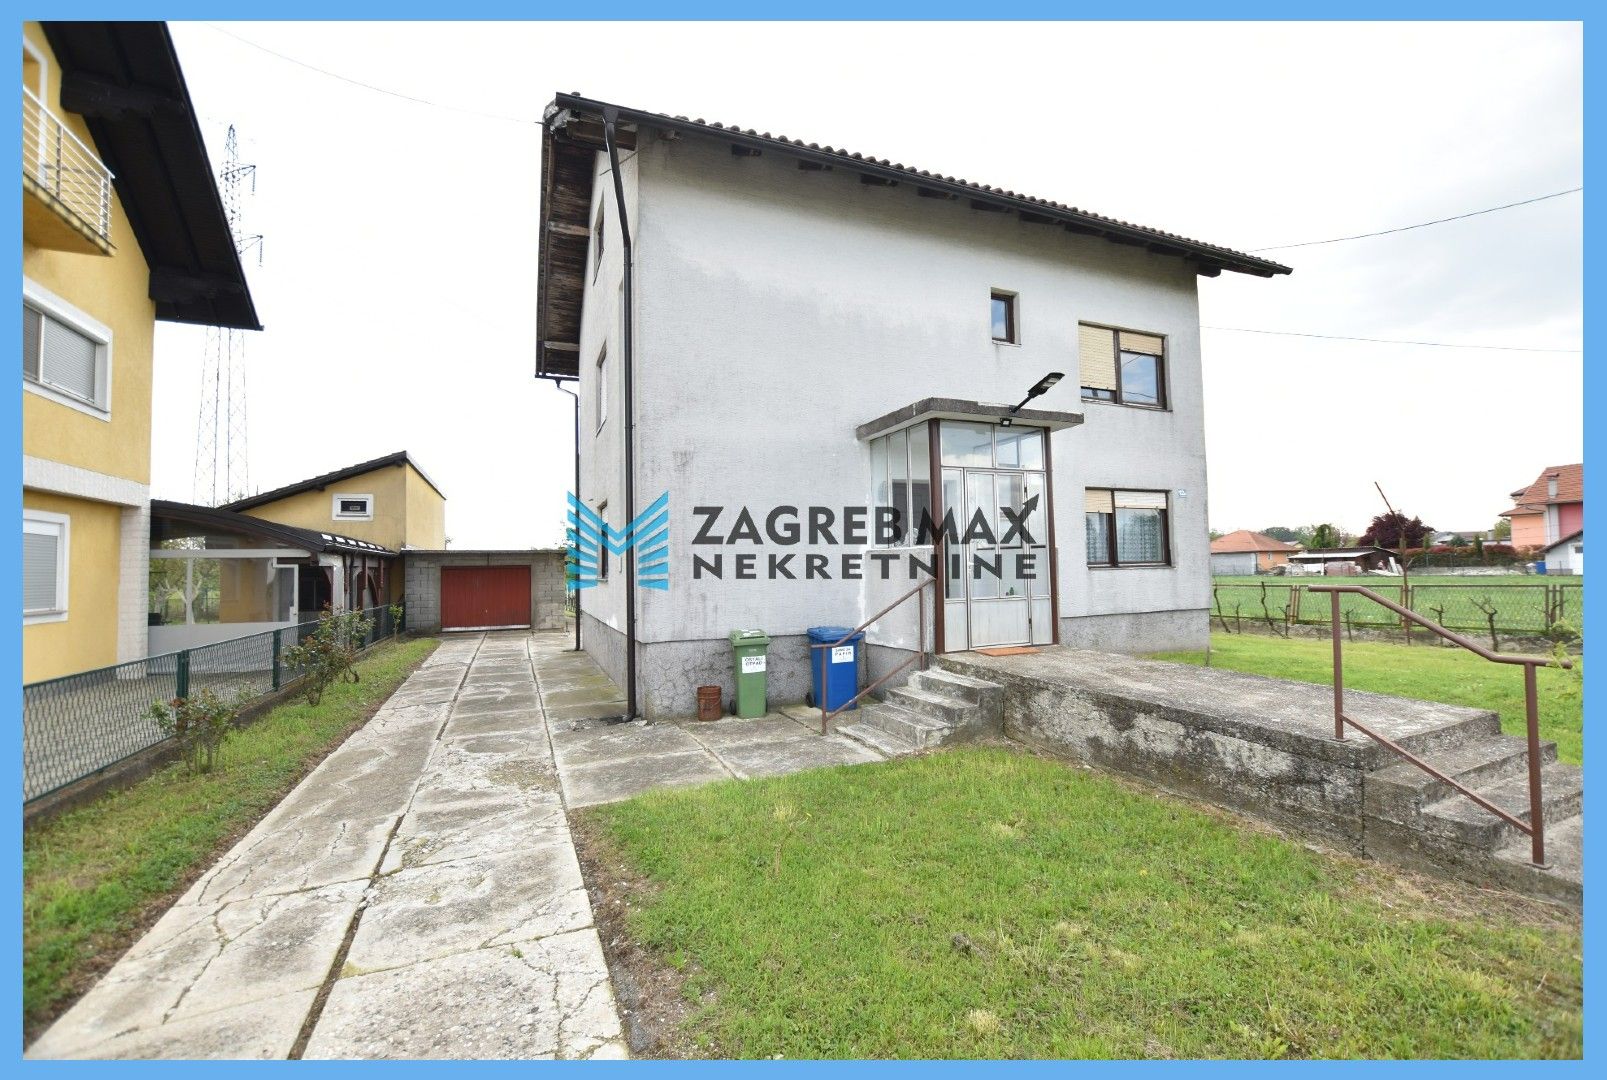 Zagreb - NAJAM - BESTOVJE Komforan 3soban stan u kući 100 m2, mirno okruženje, vrt, terasa, garaža, spremište